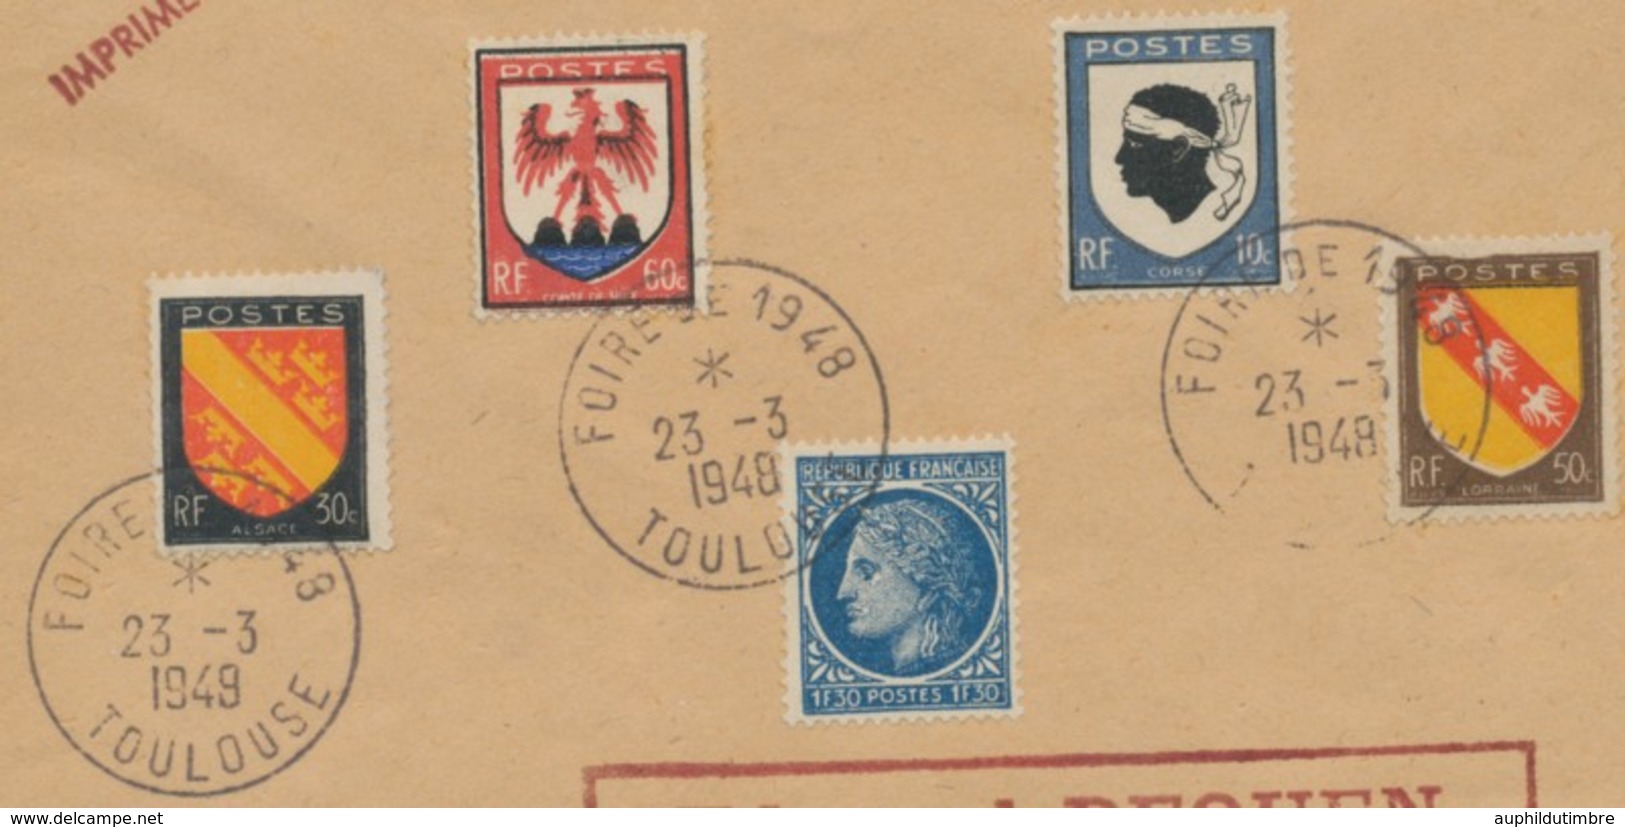 1948 Superbe Lettre Obl. FOIRE DE 1948 TOULOUSE C923 - Commemorative Postmarks